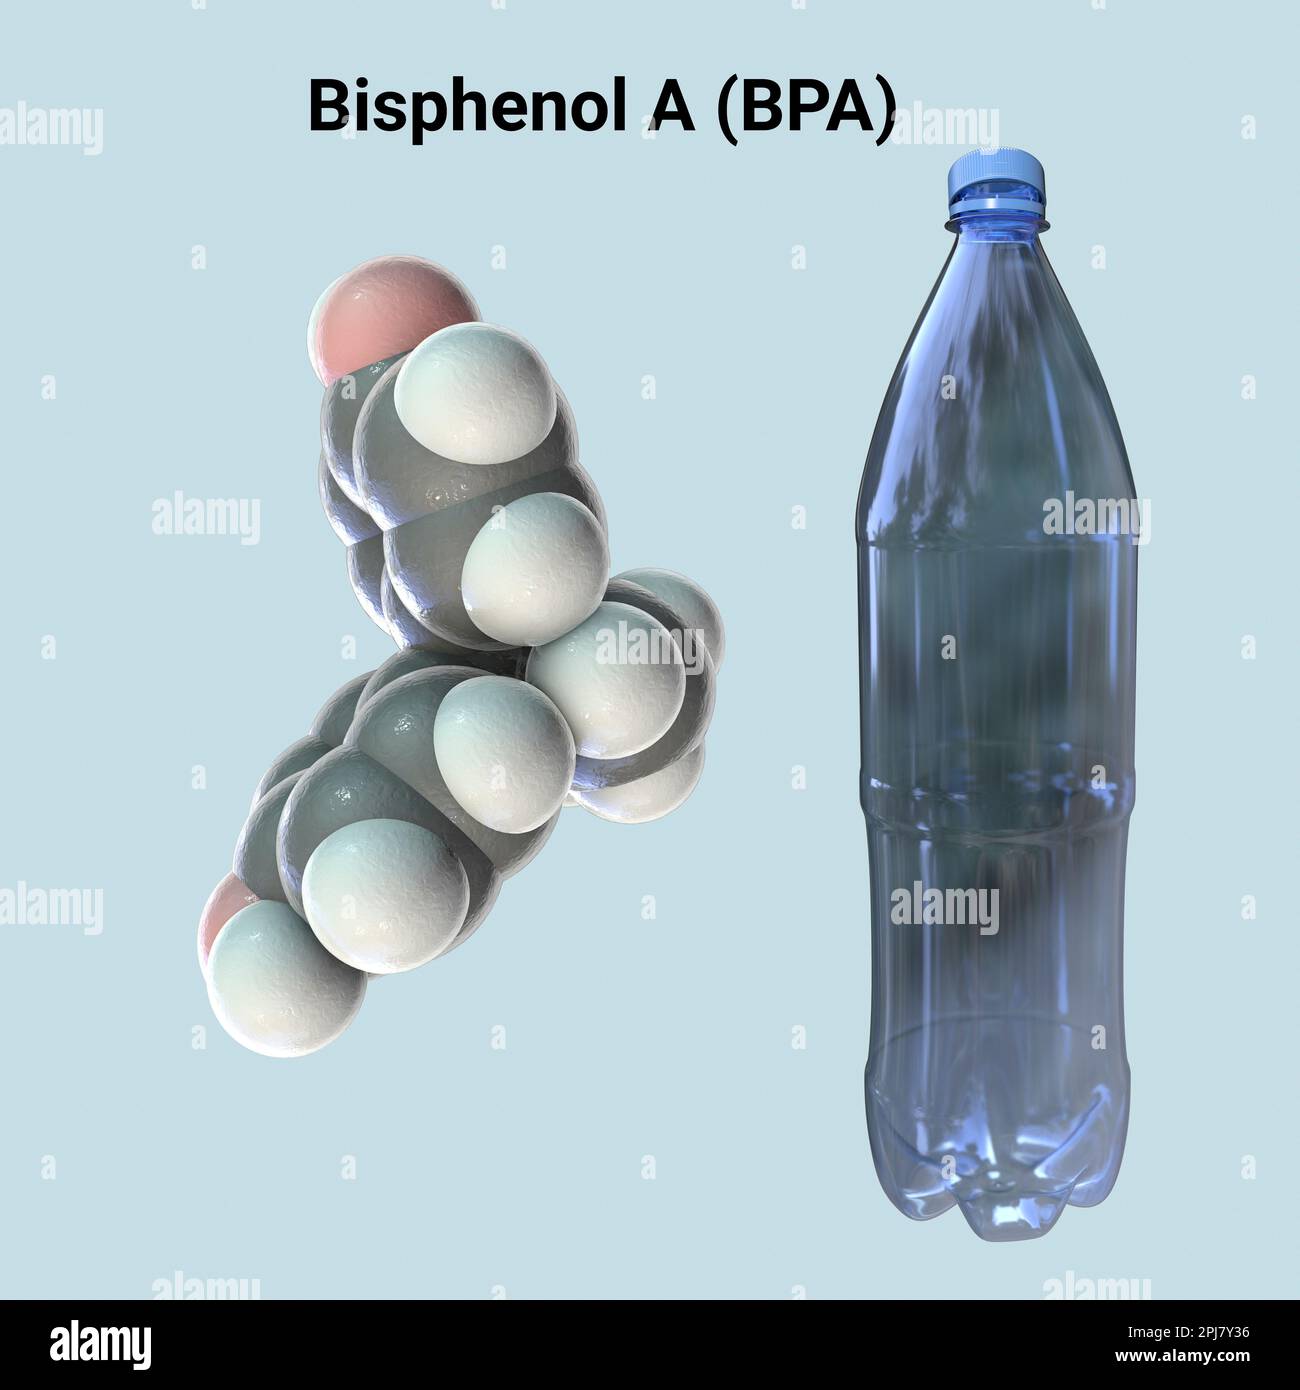 Bisphenol A Molekül und Plastikflasche, Illustration Stockfoto